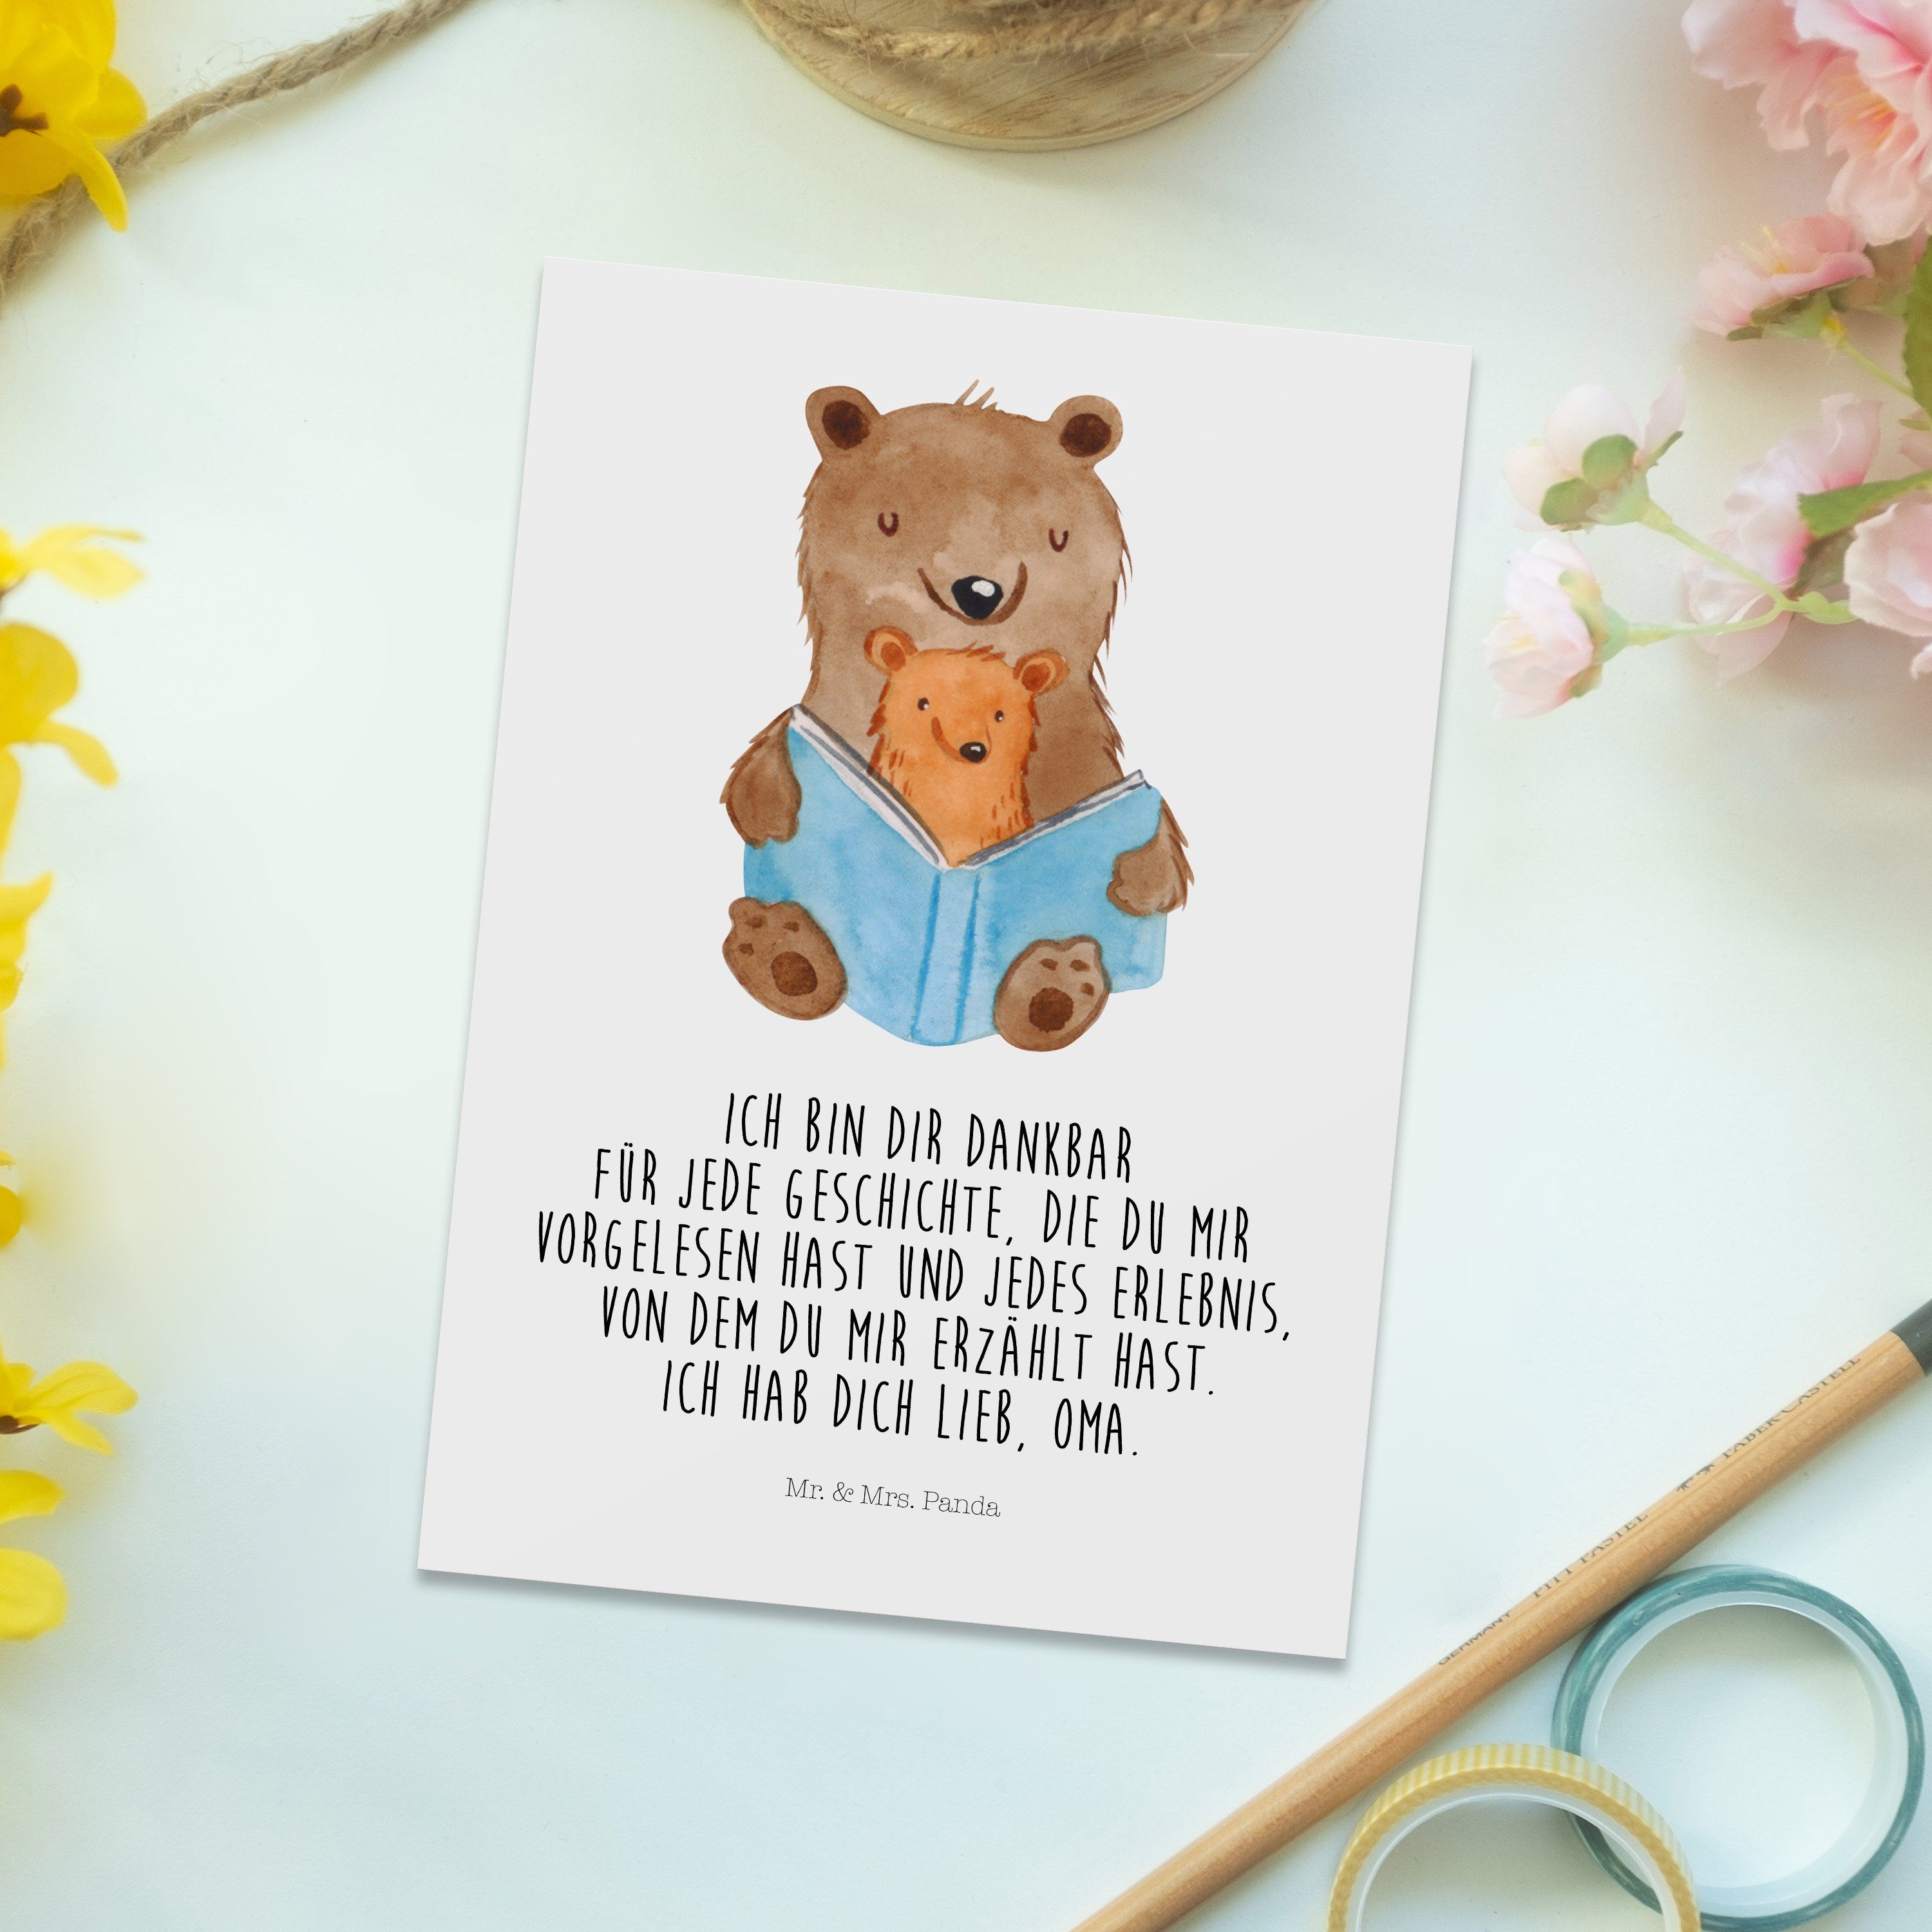 Mr. & Mrs. Panda Weiß Bären Geschenk, Postkarte Geburtstagskarte, Buch - Grußkarte Muttertag, 